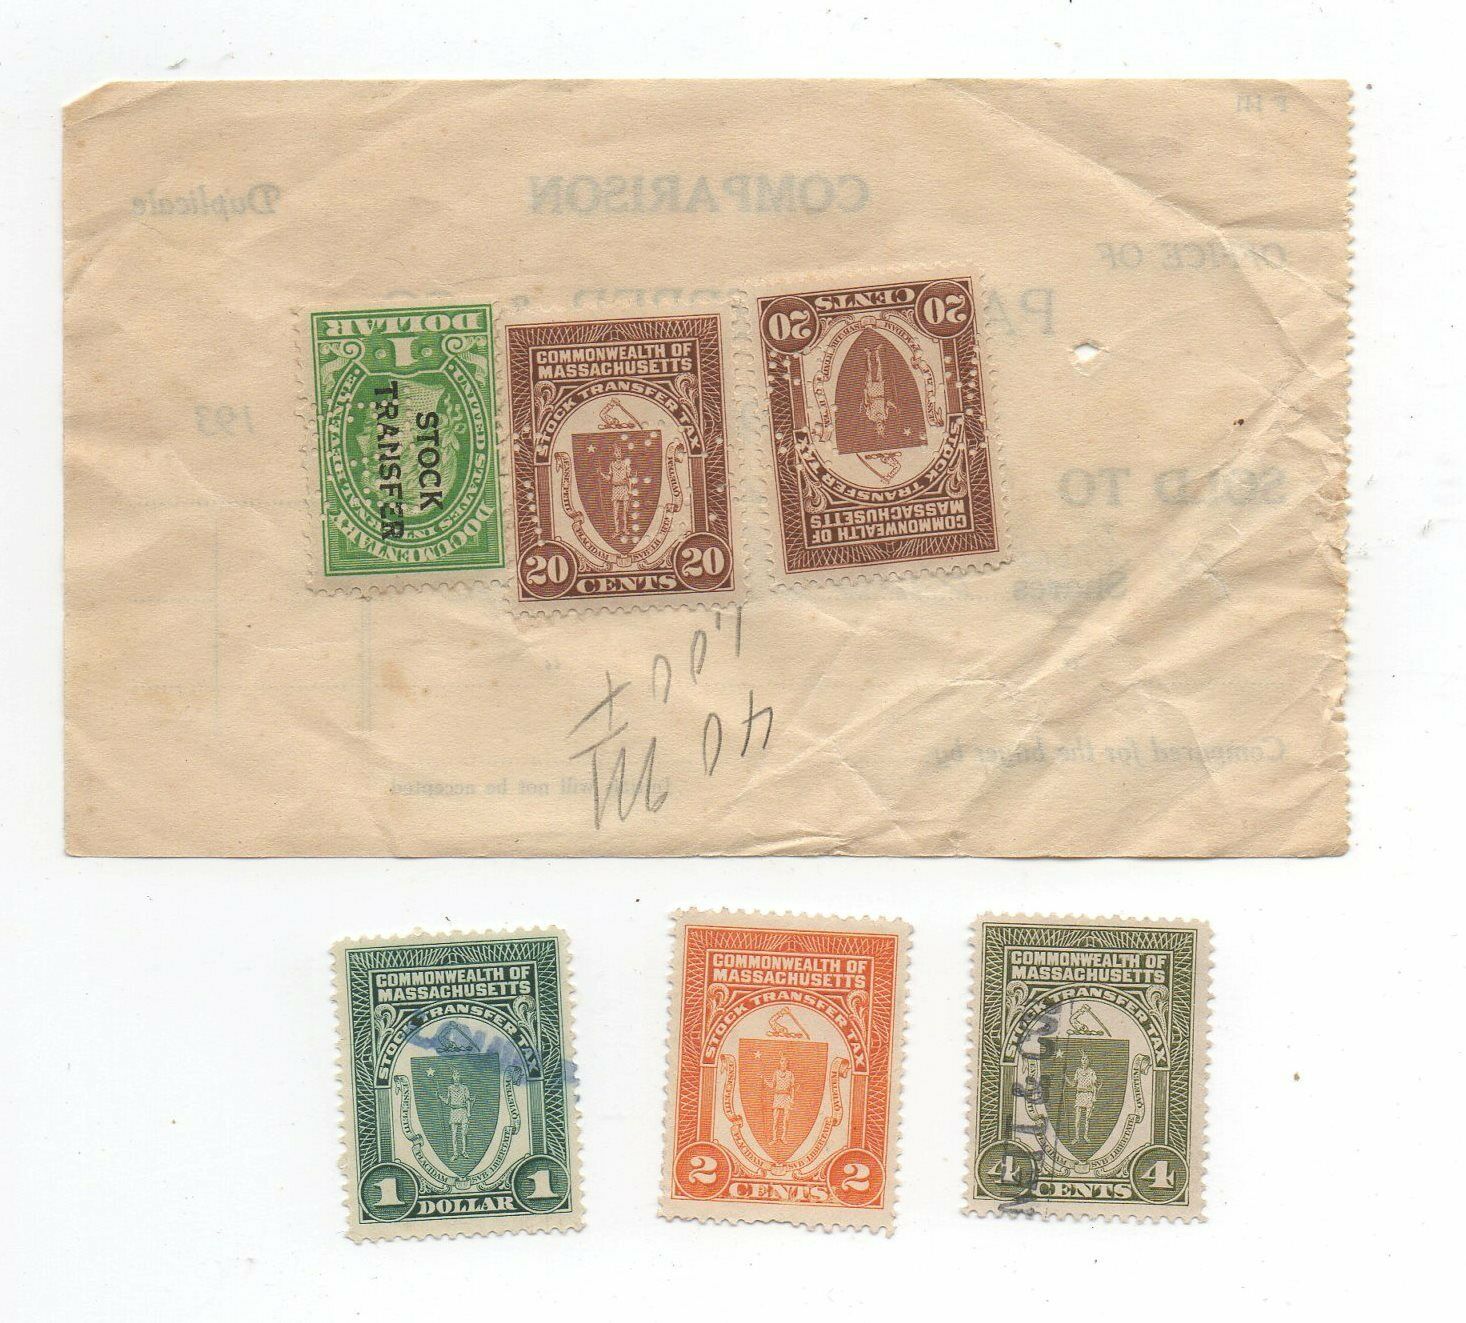 Massachusetts Revenue Stamp Lot